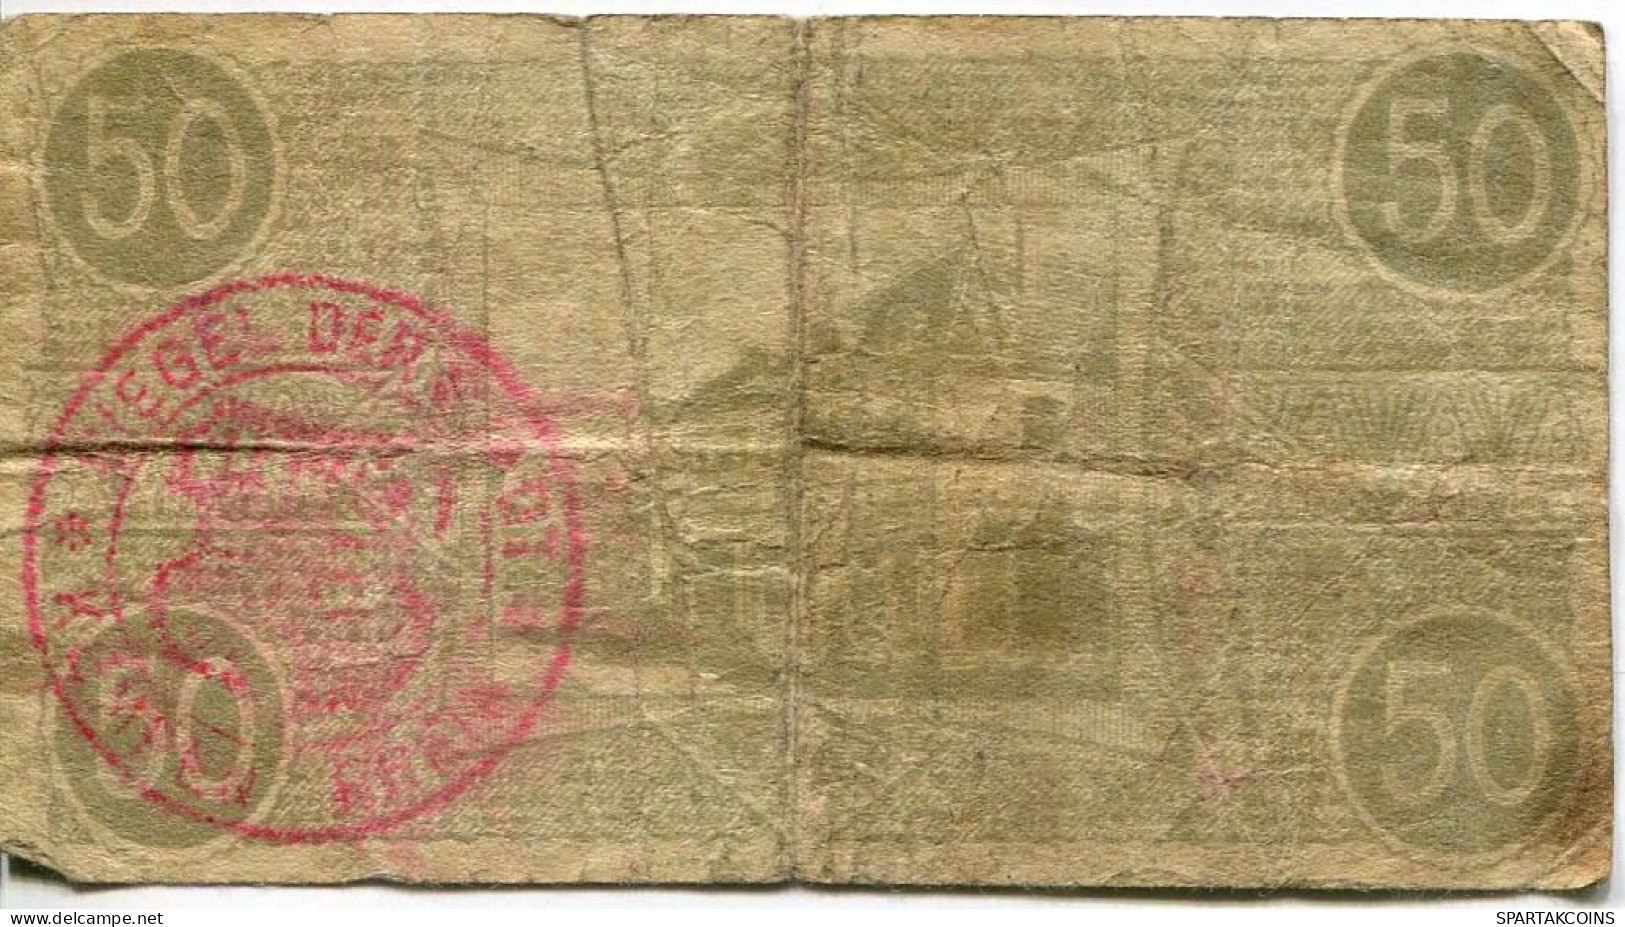 50 PFENNIG 1918 Stadt KEMPEN Rhine DEUTSCHLAND Notgeld Papiergeld Banknote #PL844 - [11] Local Banknote Issues